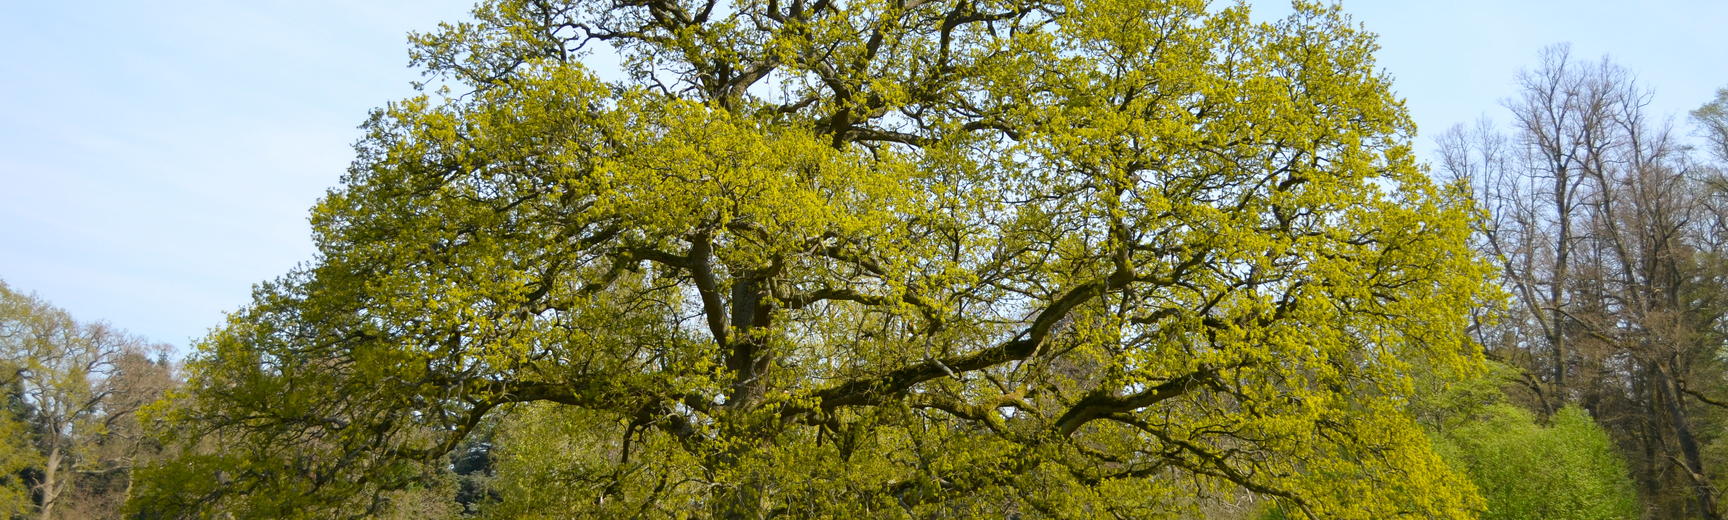 Oak Tree in the Parkland in Spring